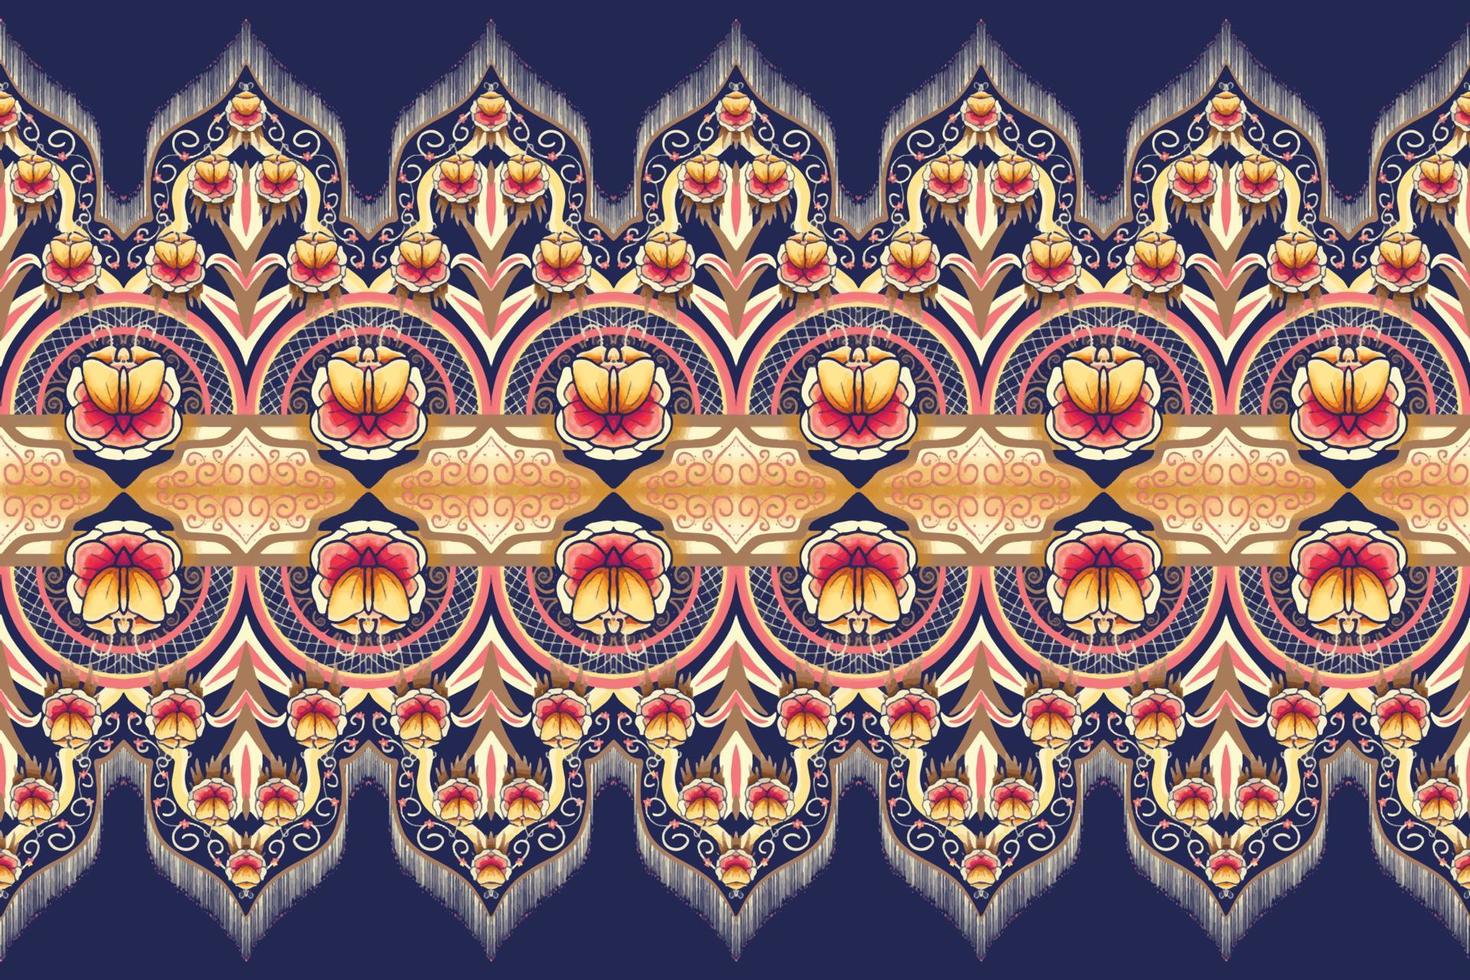 fiore rosa giallo marrone su blu navy. disegno tradizionale geometrico etnico orientale modello per sfondo, moquette, carta da parati, abbigliamento, confezionamento, batik, tessuto, illustrazione vettoriale stile ricamo